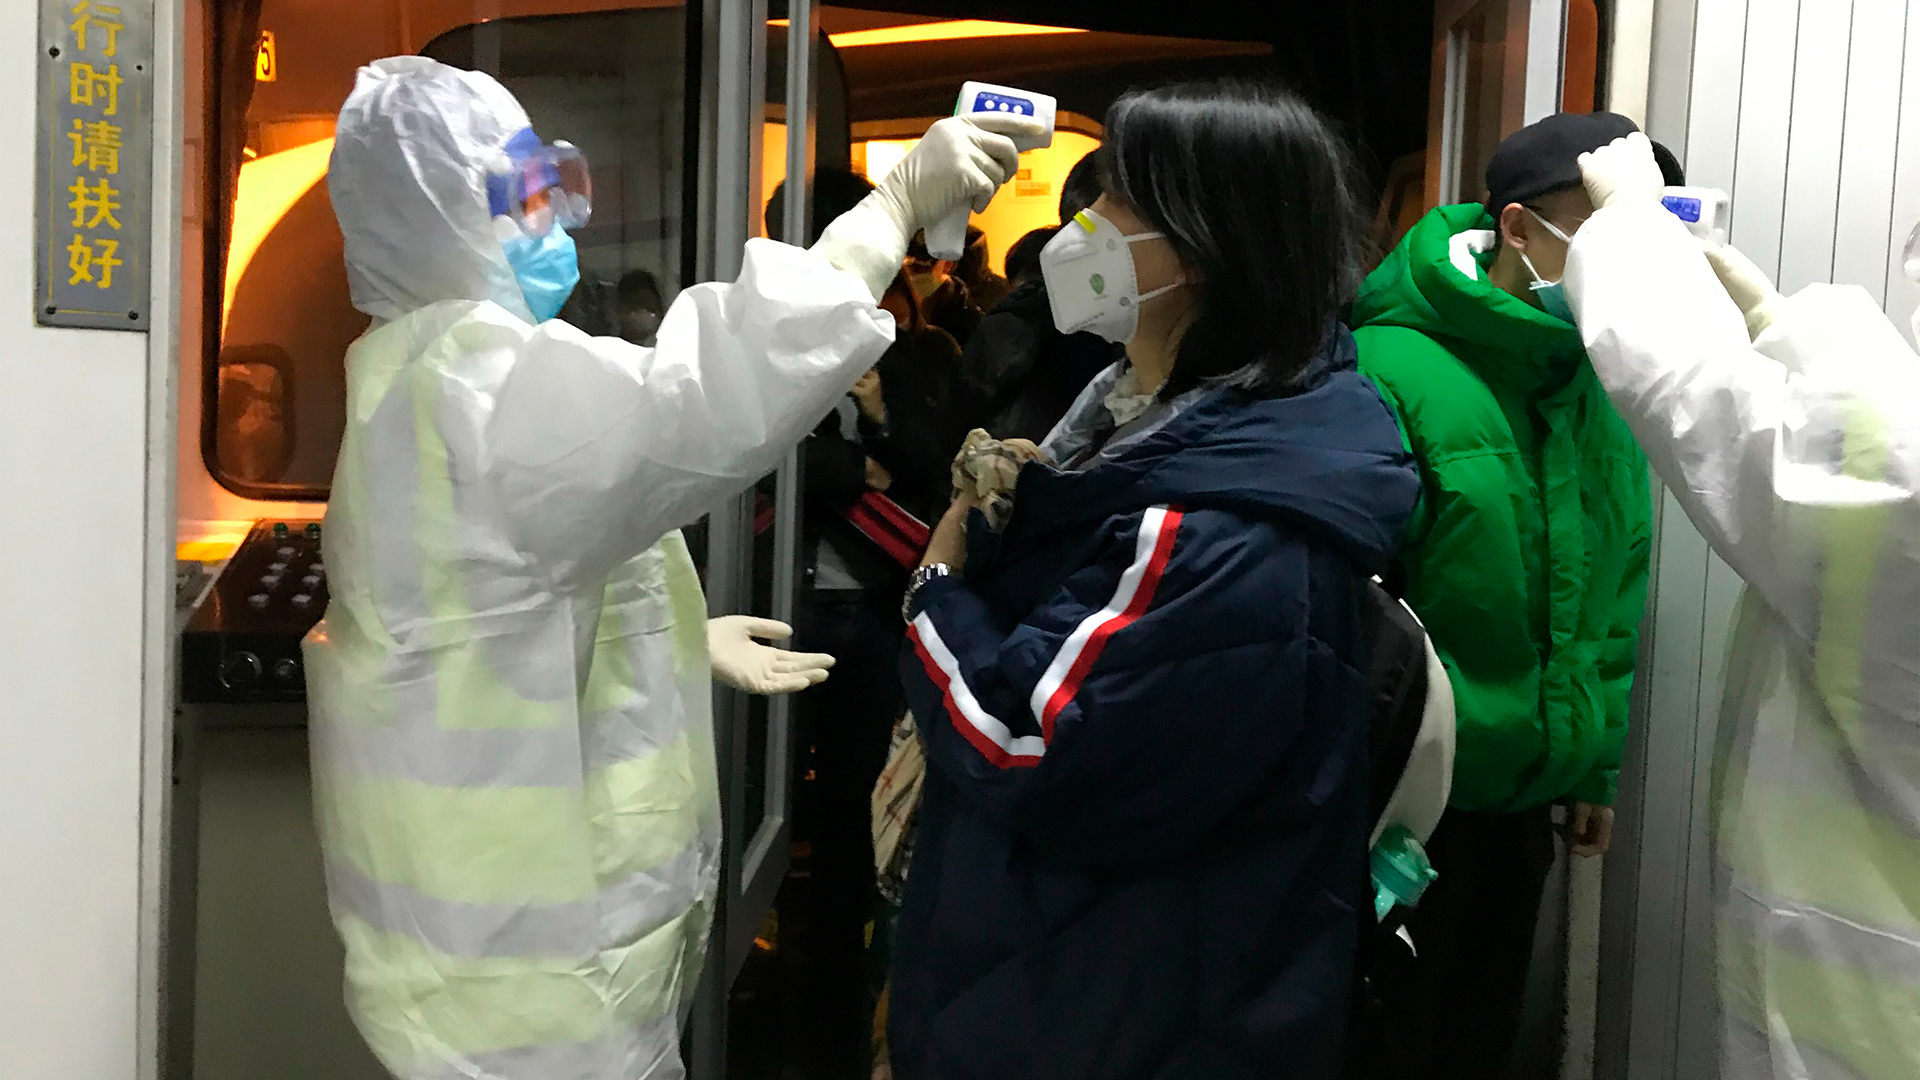 Gesundheitsbeamte in Chemikalienschutzanzügen kontrollieren am Flughafen die Körpertemperatur von Passagieren, die aus der Stadt Wuhan angereist sind. | dpa